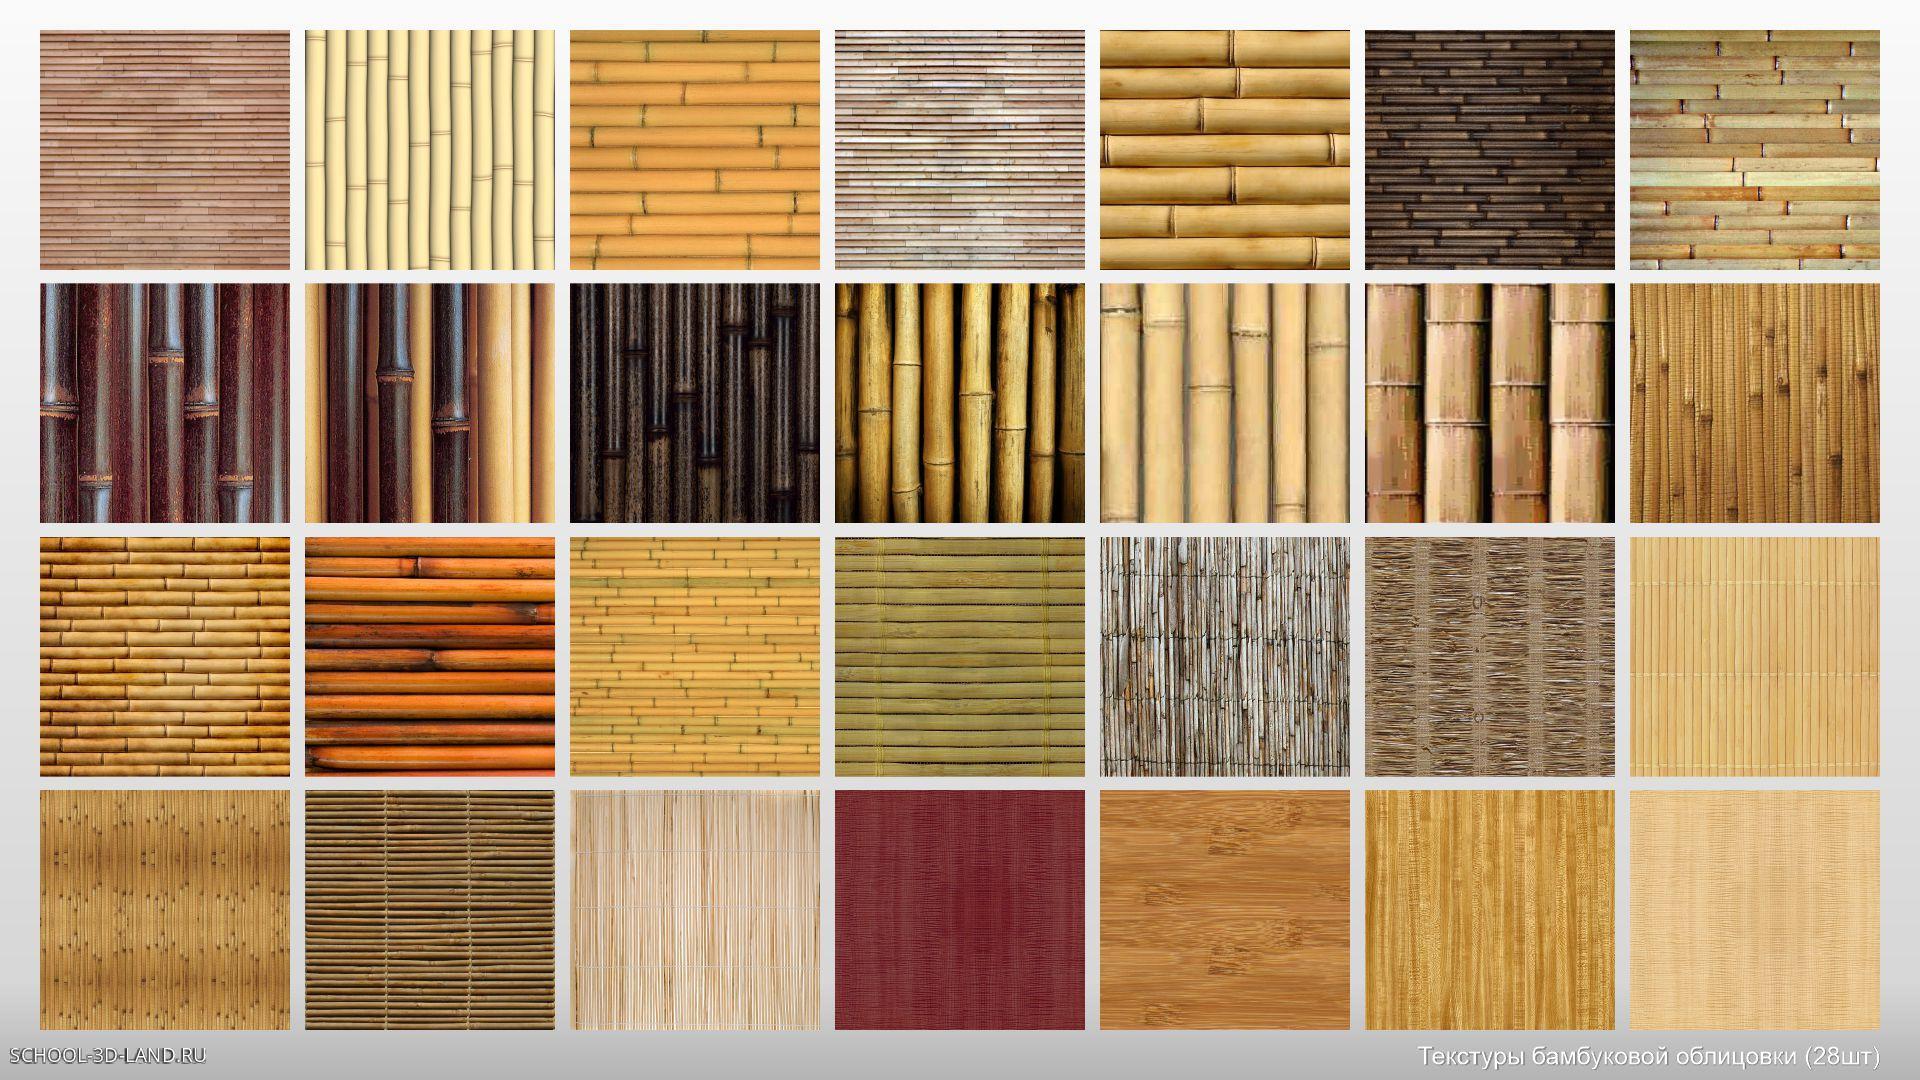 Сборник 26. Текстуры бамбуковой облицовки (28шт)